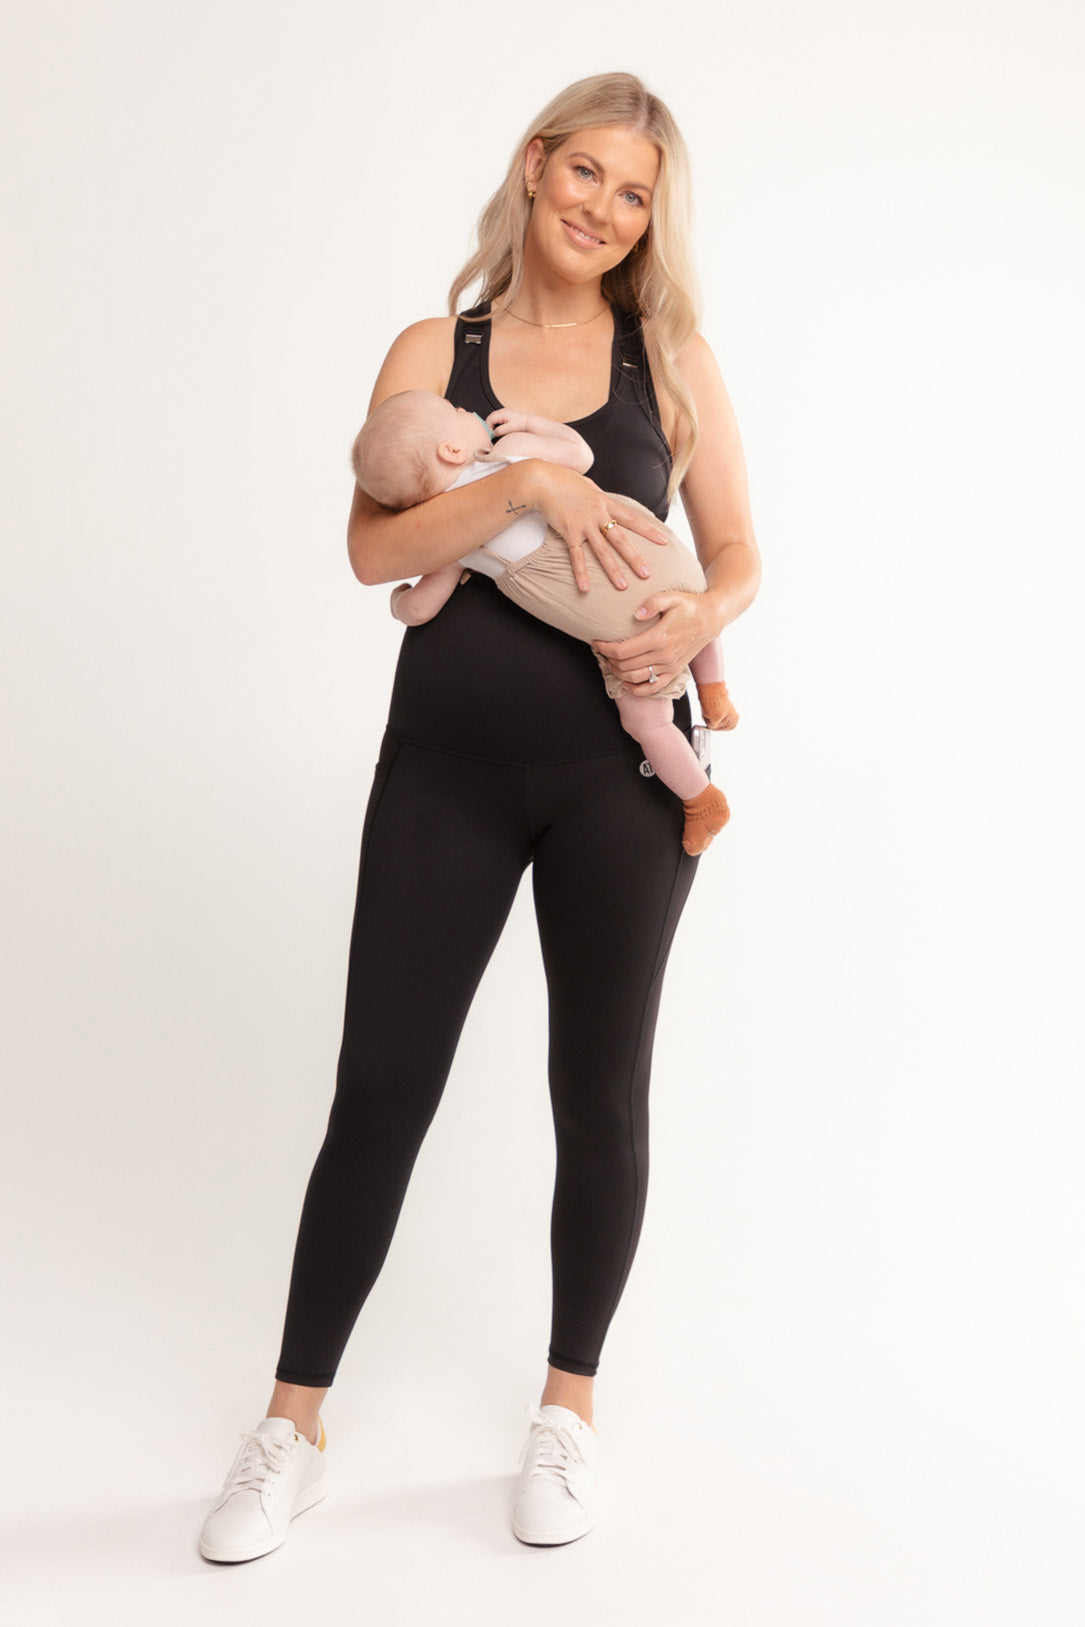 postnatal-recovery-pocket-tights-full-length-black-medium-front